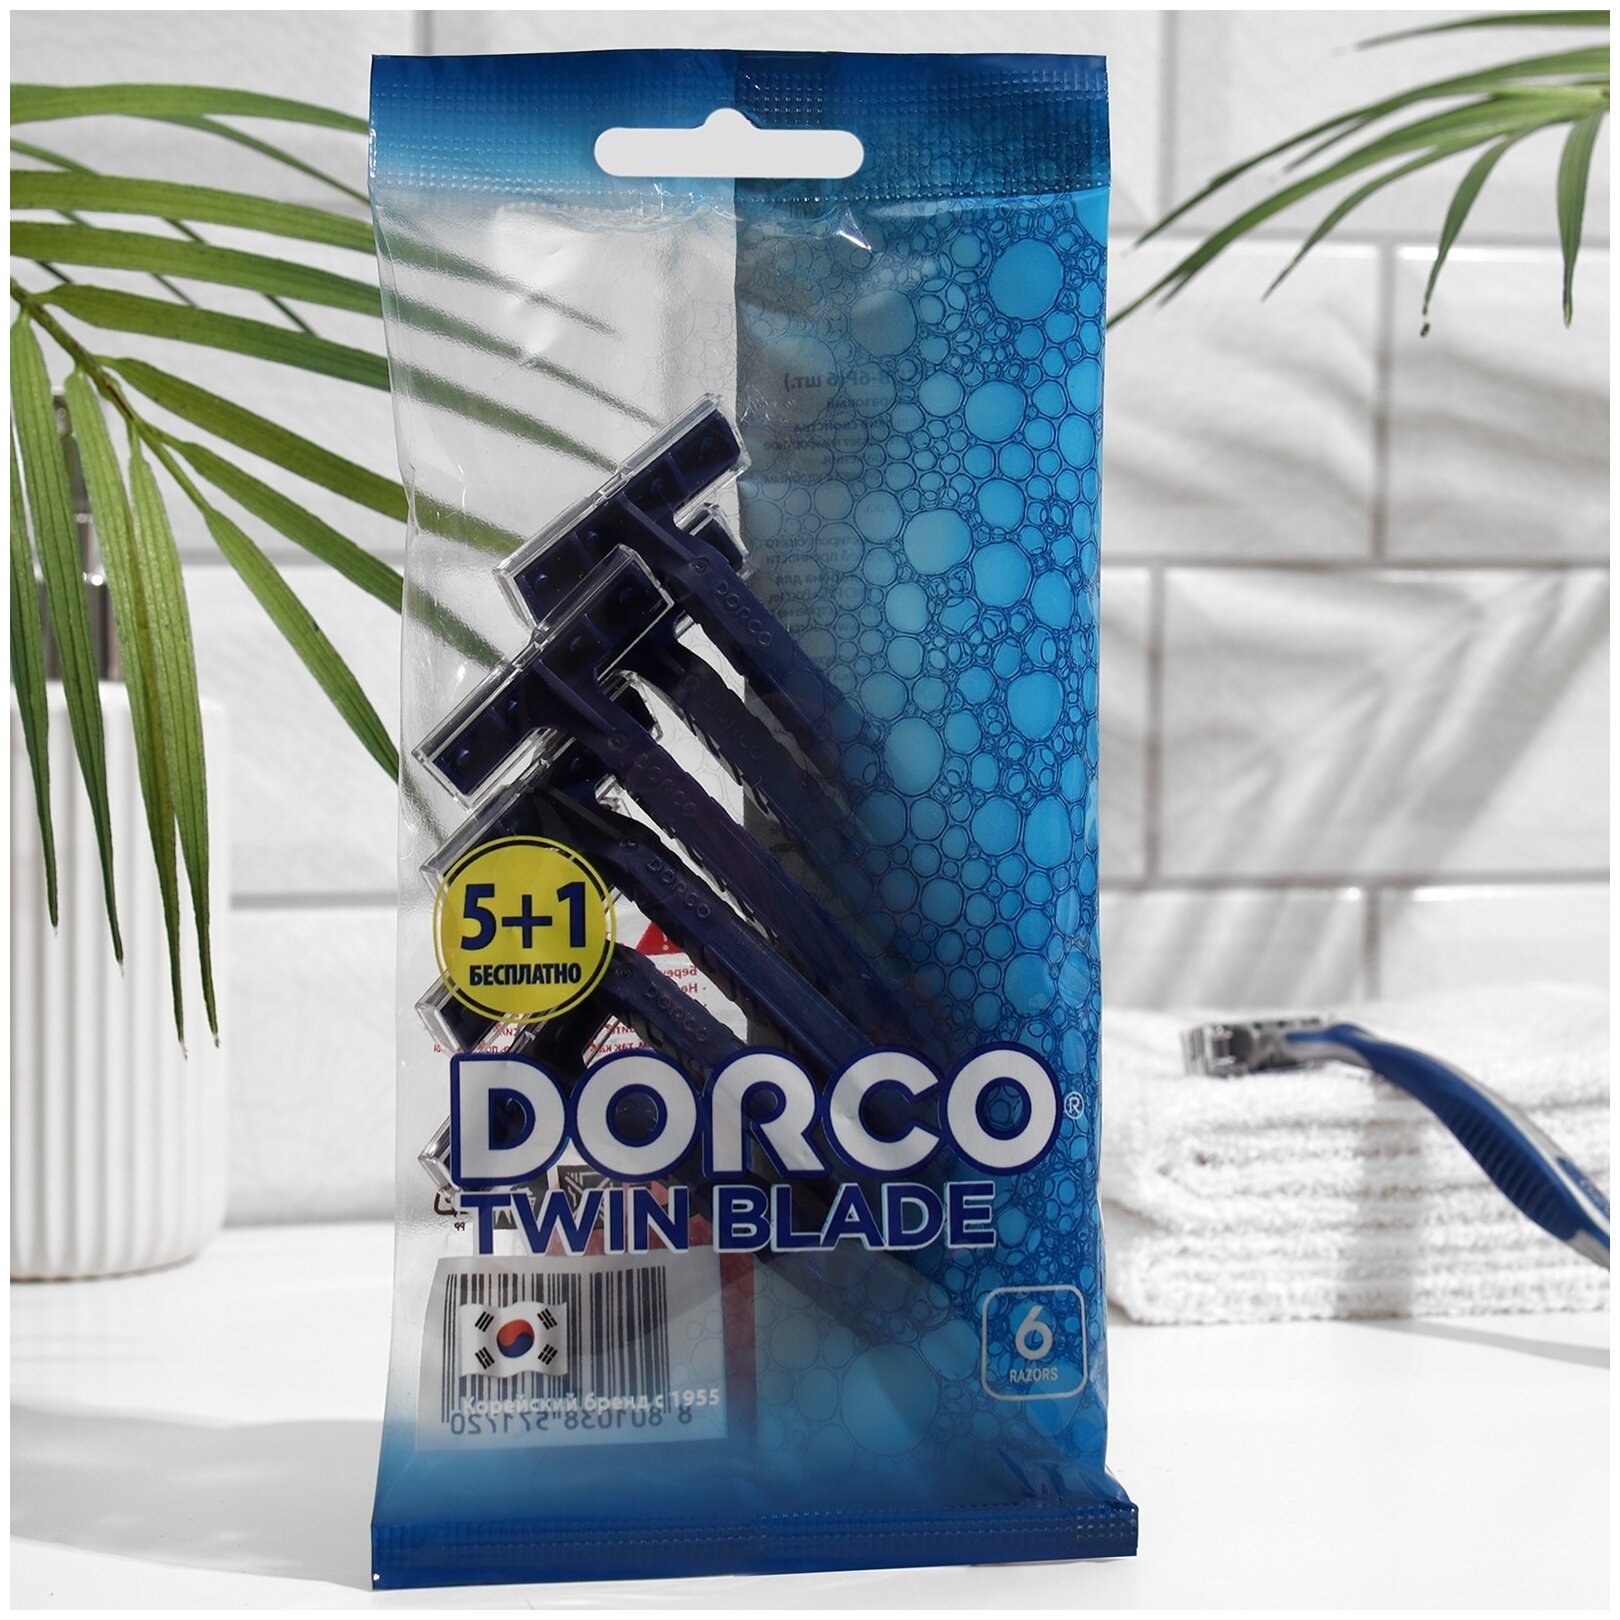 Одноразовый бритвенный станок Dorco TD705, 5+1 шт, синий, 6 шт.